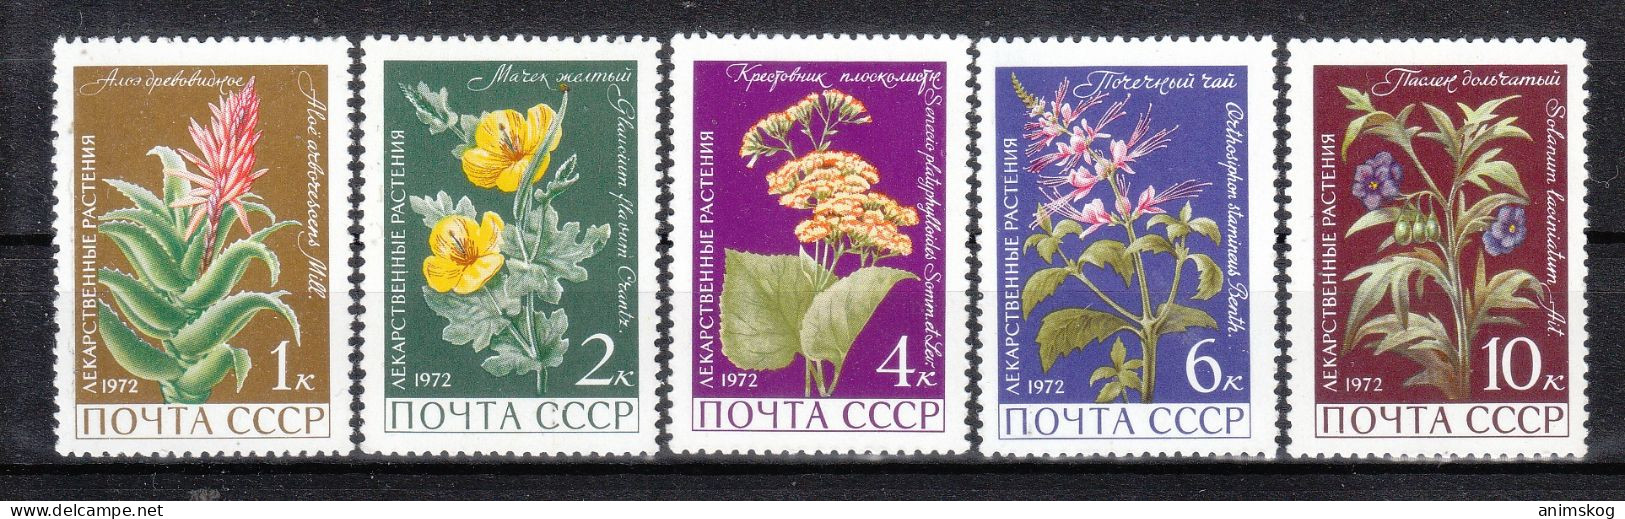 UdSSR 1972**, Arzneipflanzen, Mit Sukkulenten Aloe Und Senecio / USSR 1972, MNH, Medicinal Plants With Aloe And Senecio - Cactus